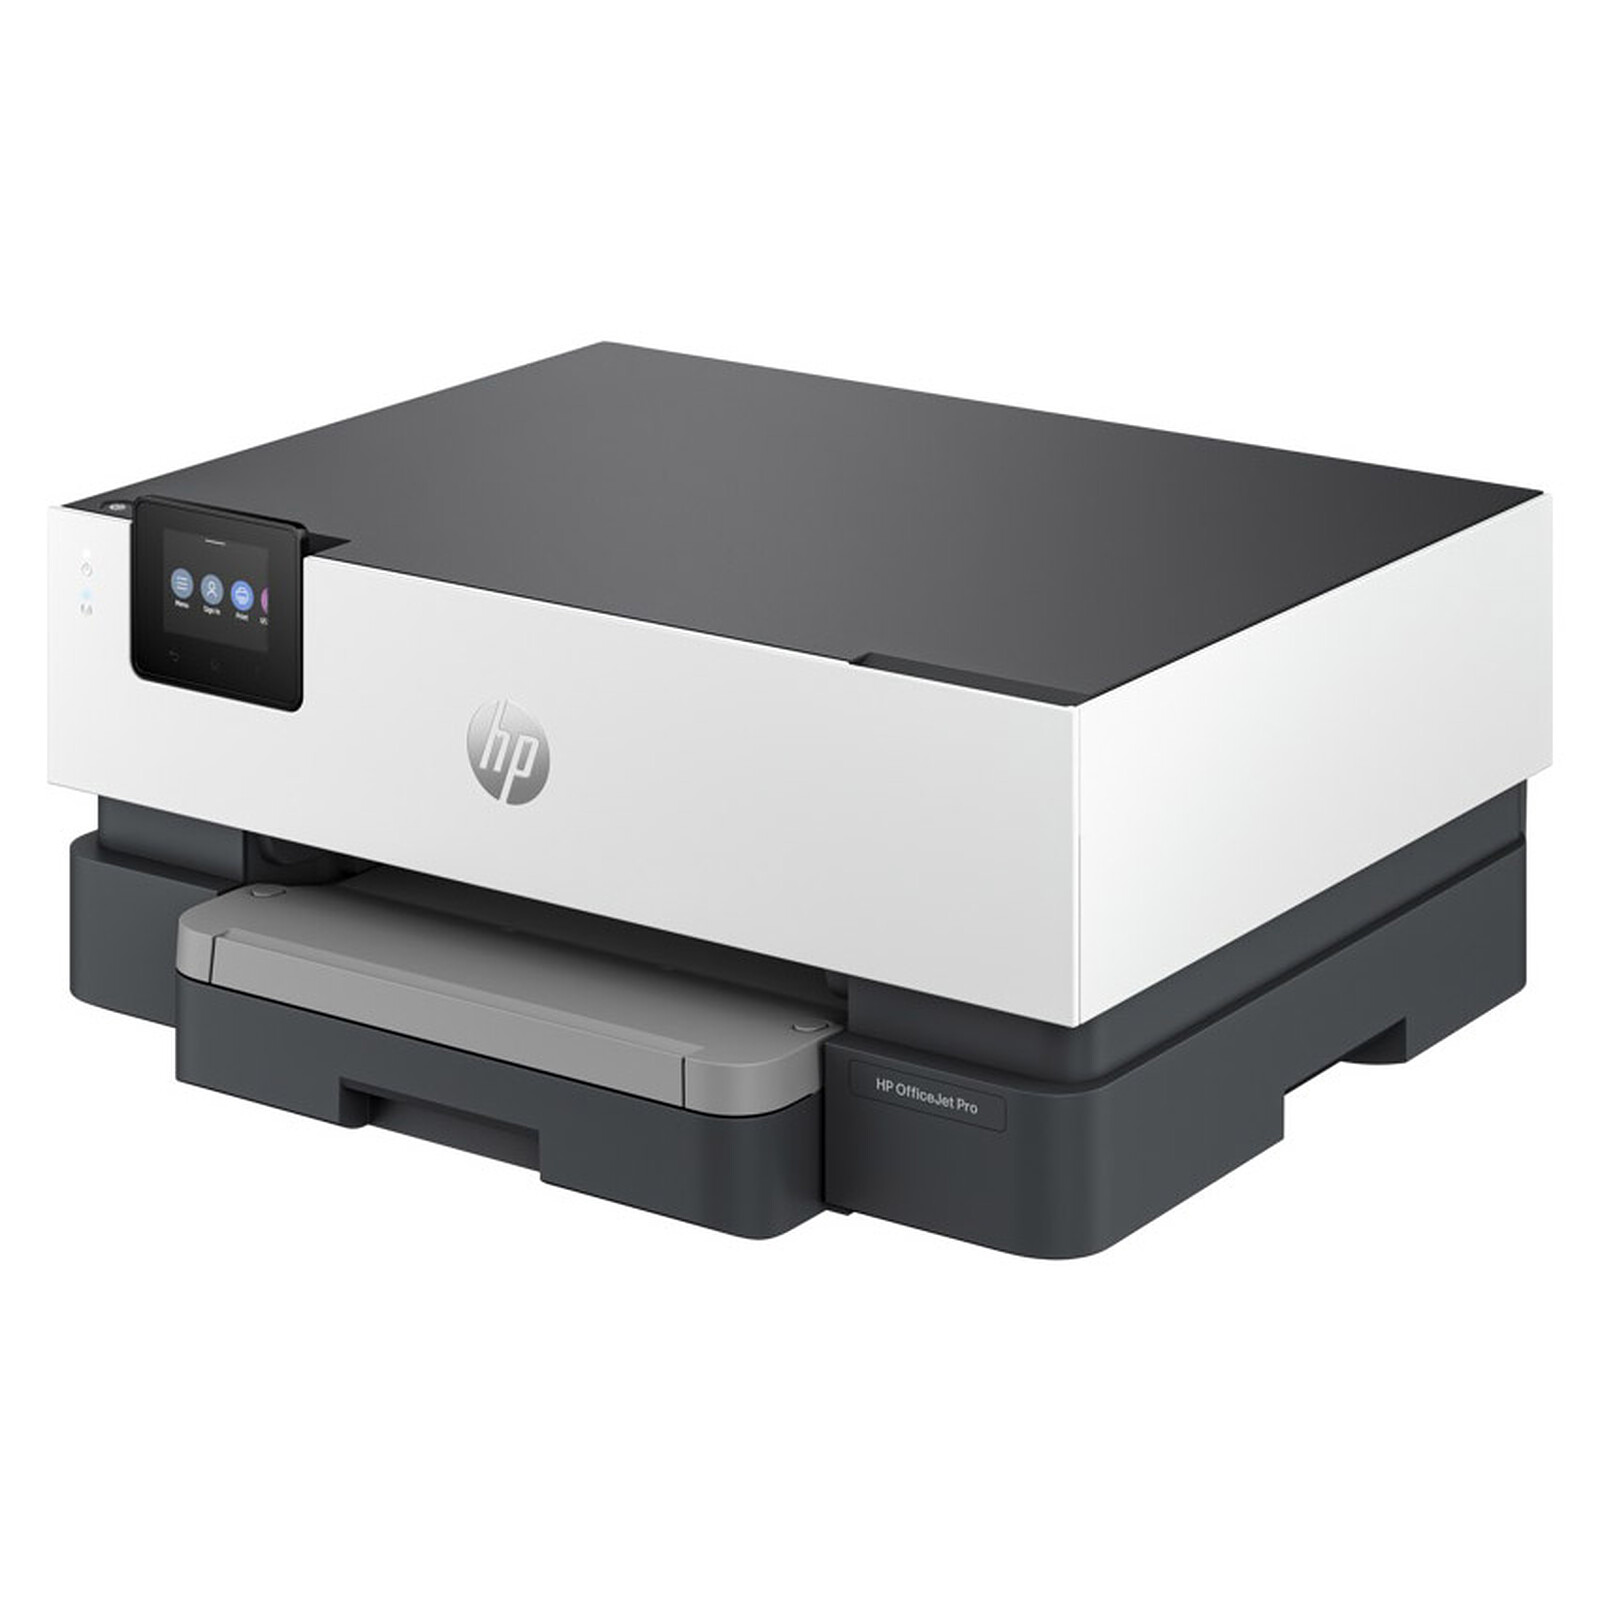 HP Officejet Pro 8210 - Imprimante jet d'encre - Garantie 3 ans LDLC